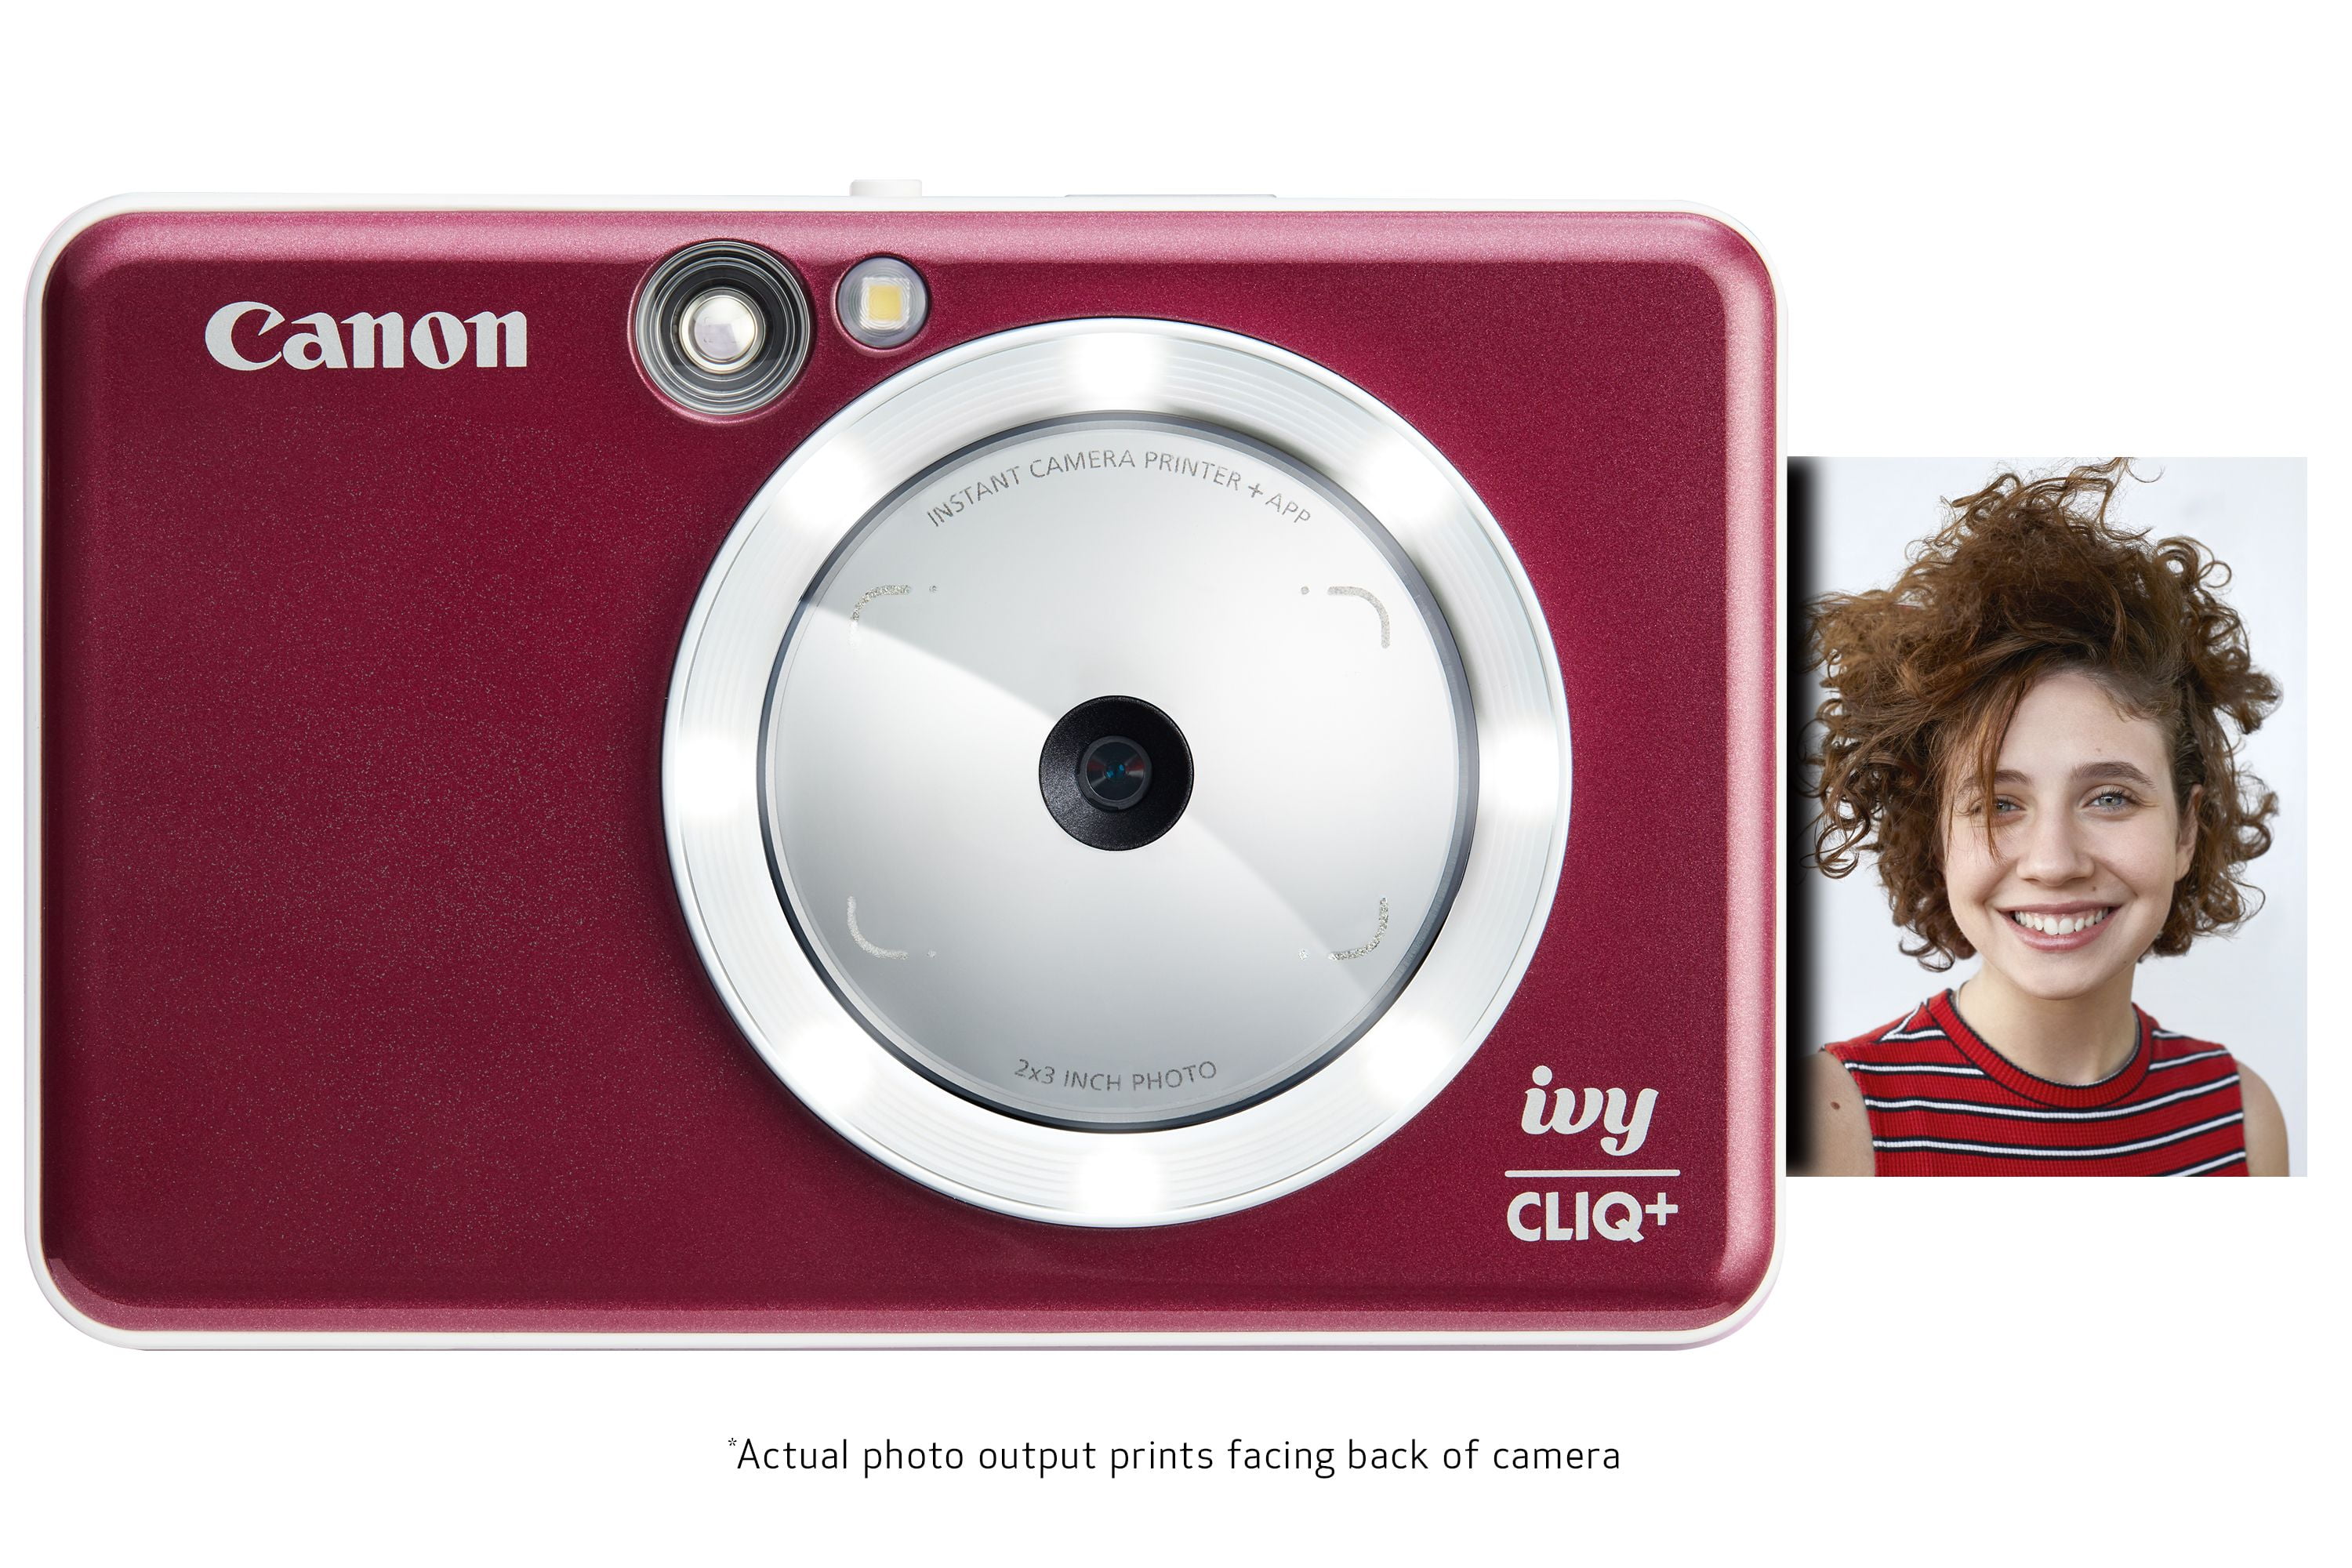 Canon IVY CLIQ Instant Camera Printer with Case